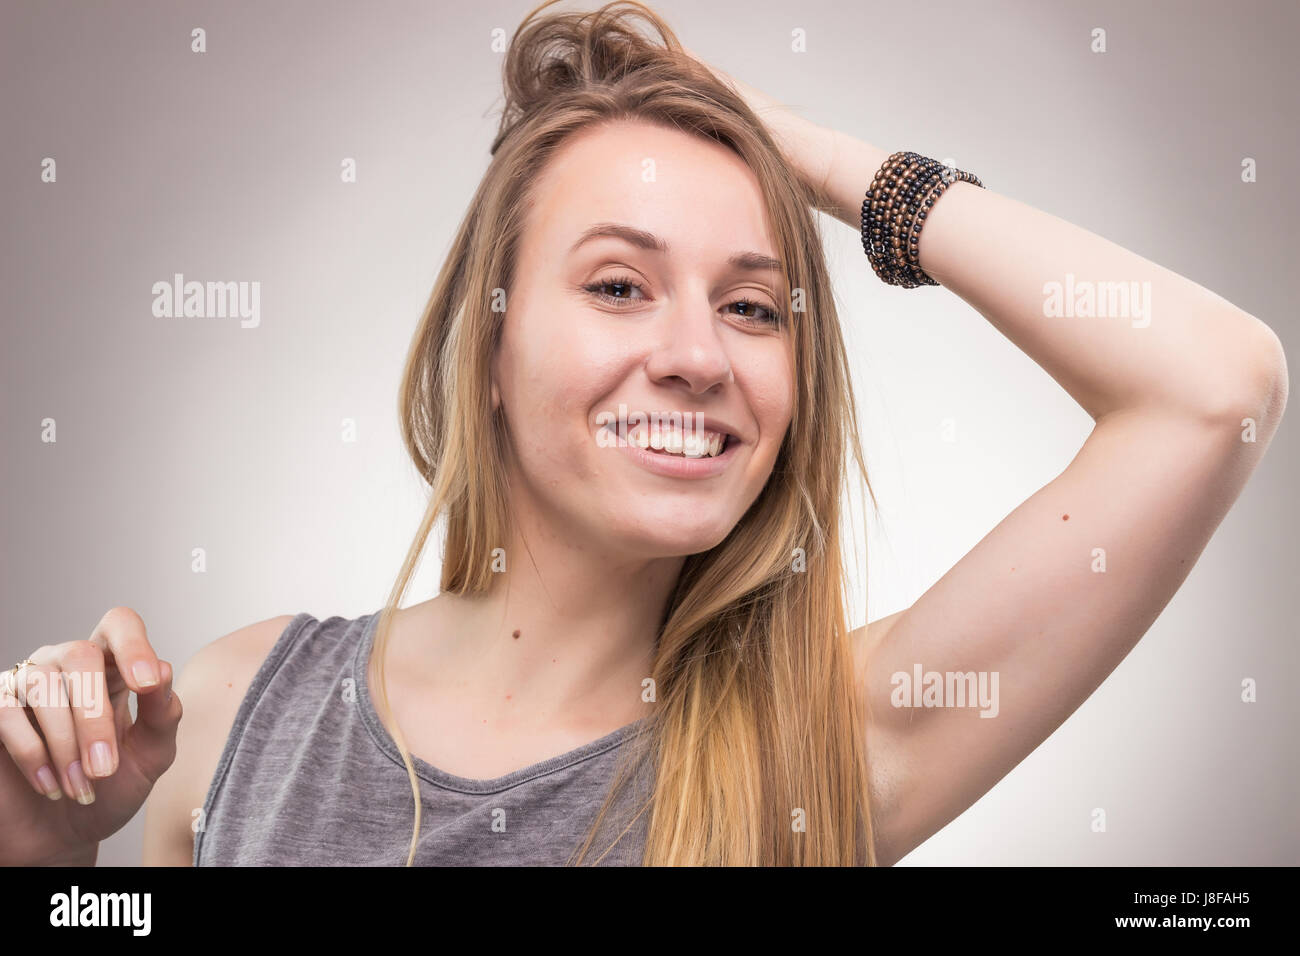 Une jeune de la femme, portrait face headshot, francs pose, background, studio Banque D'Images